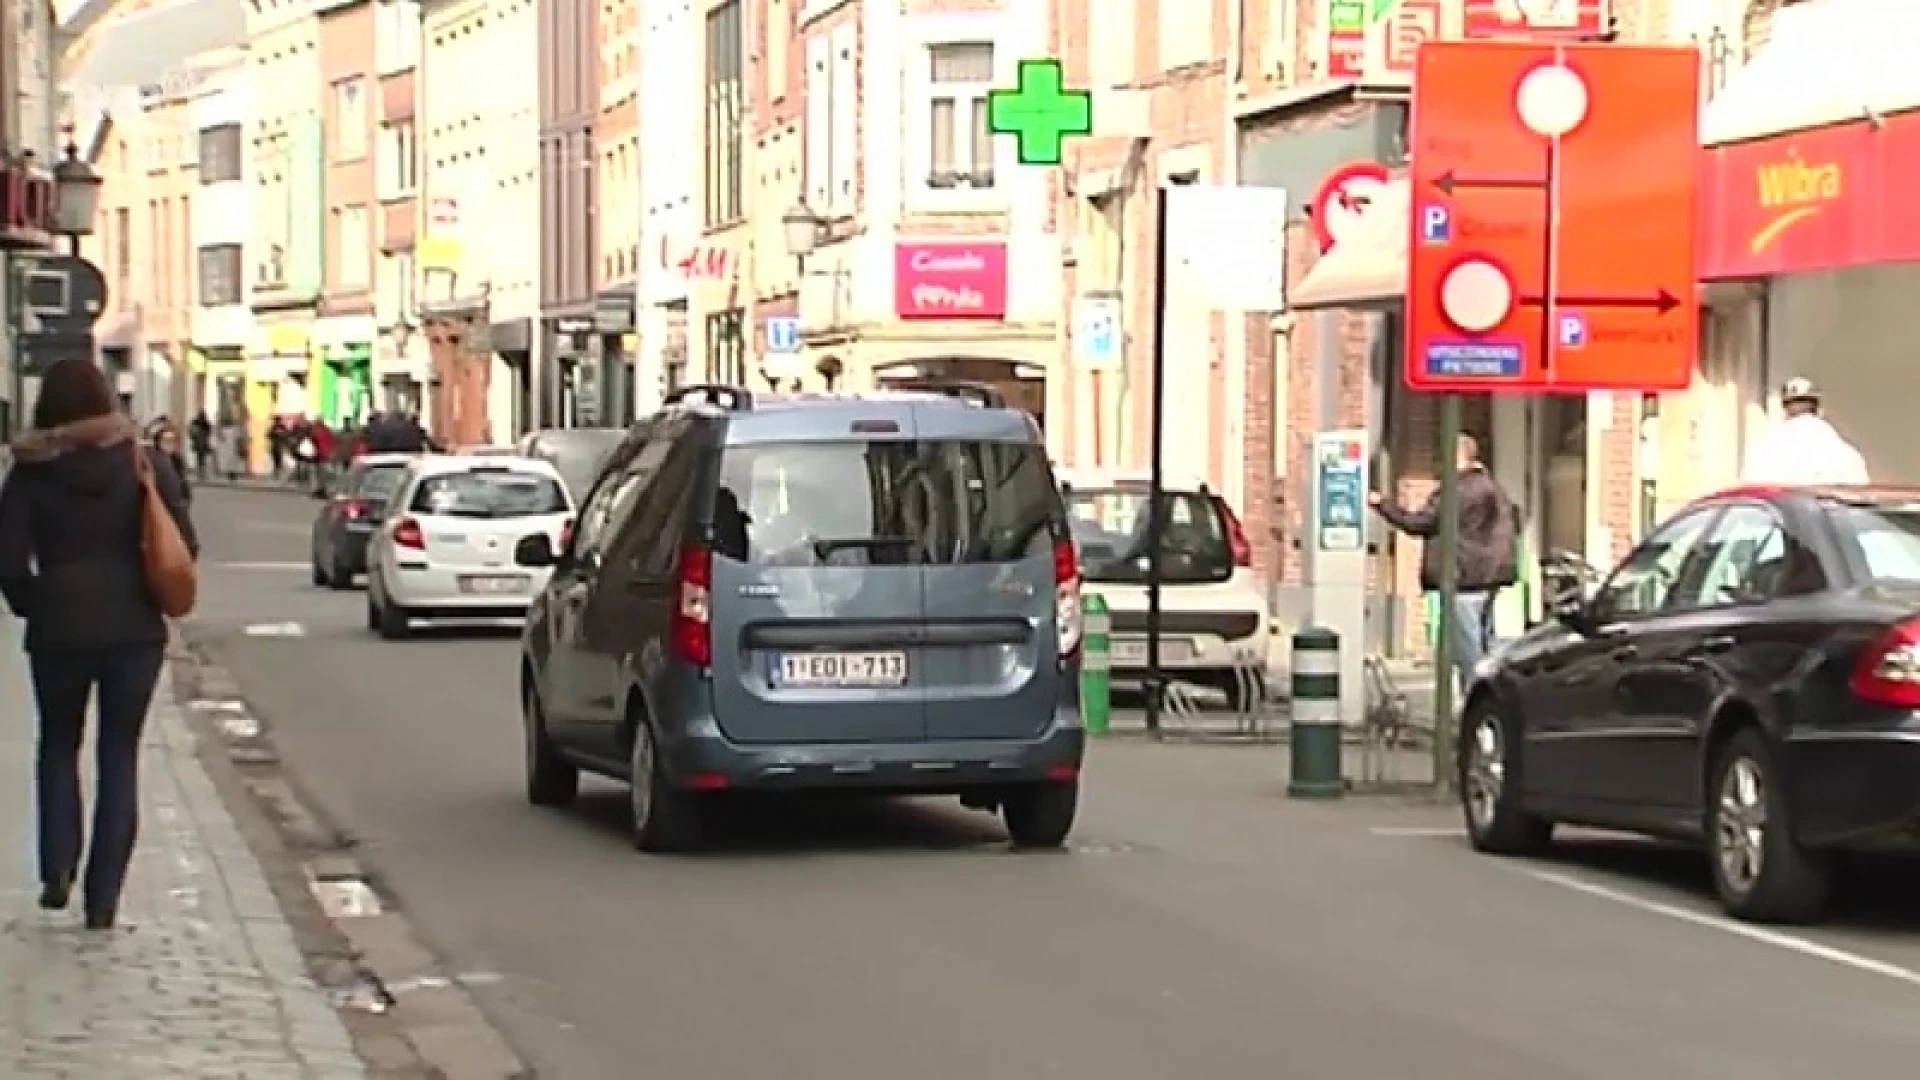 30 minuten gratis parkeren in stad Diest in plaats van kwartiertje